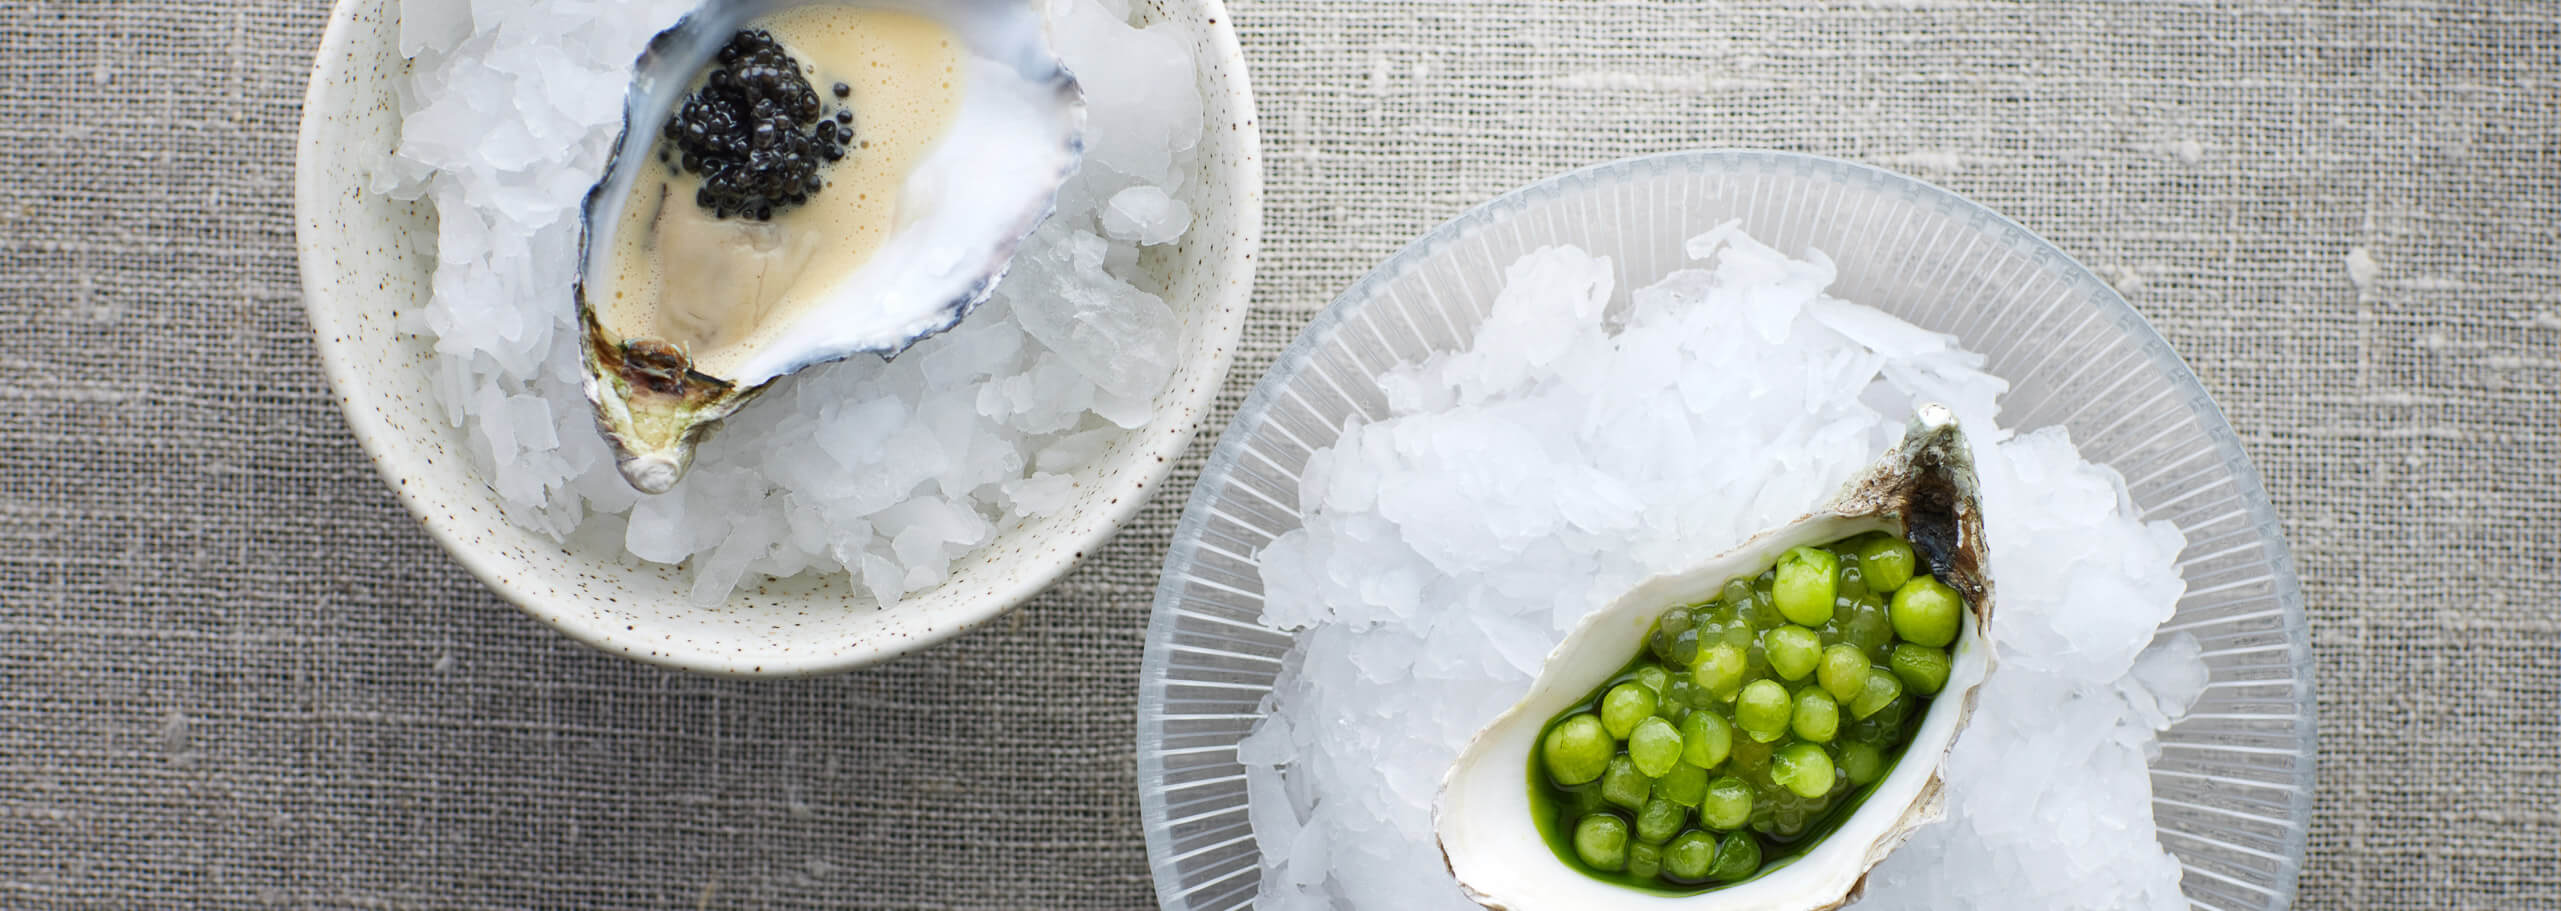 Oyster snacks and caviar by Patrick Godborg